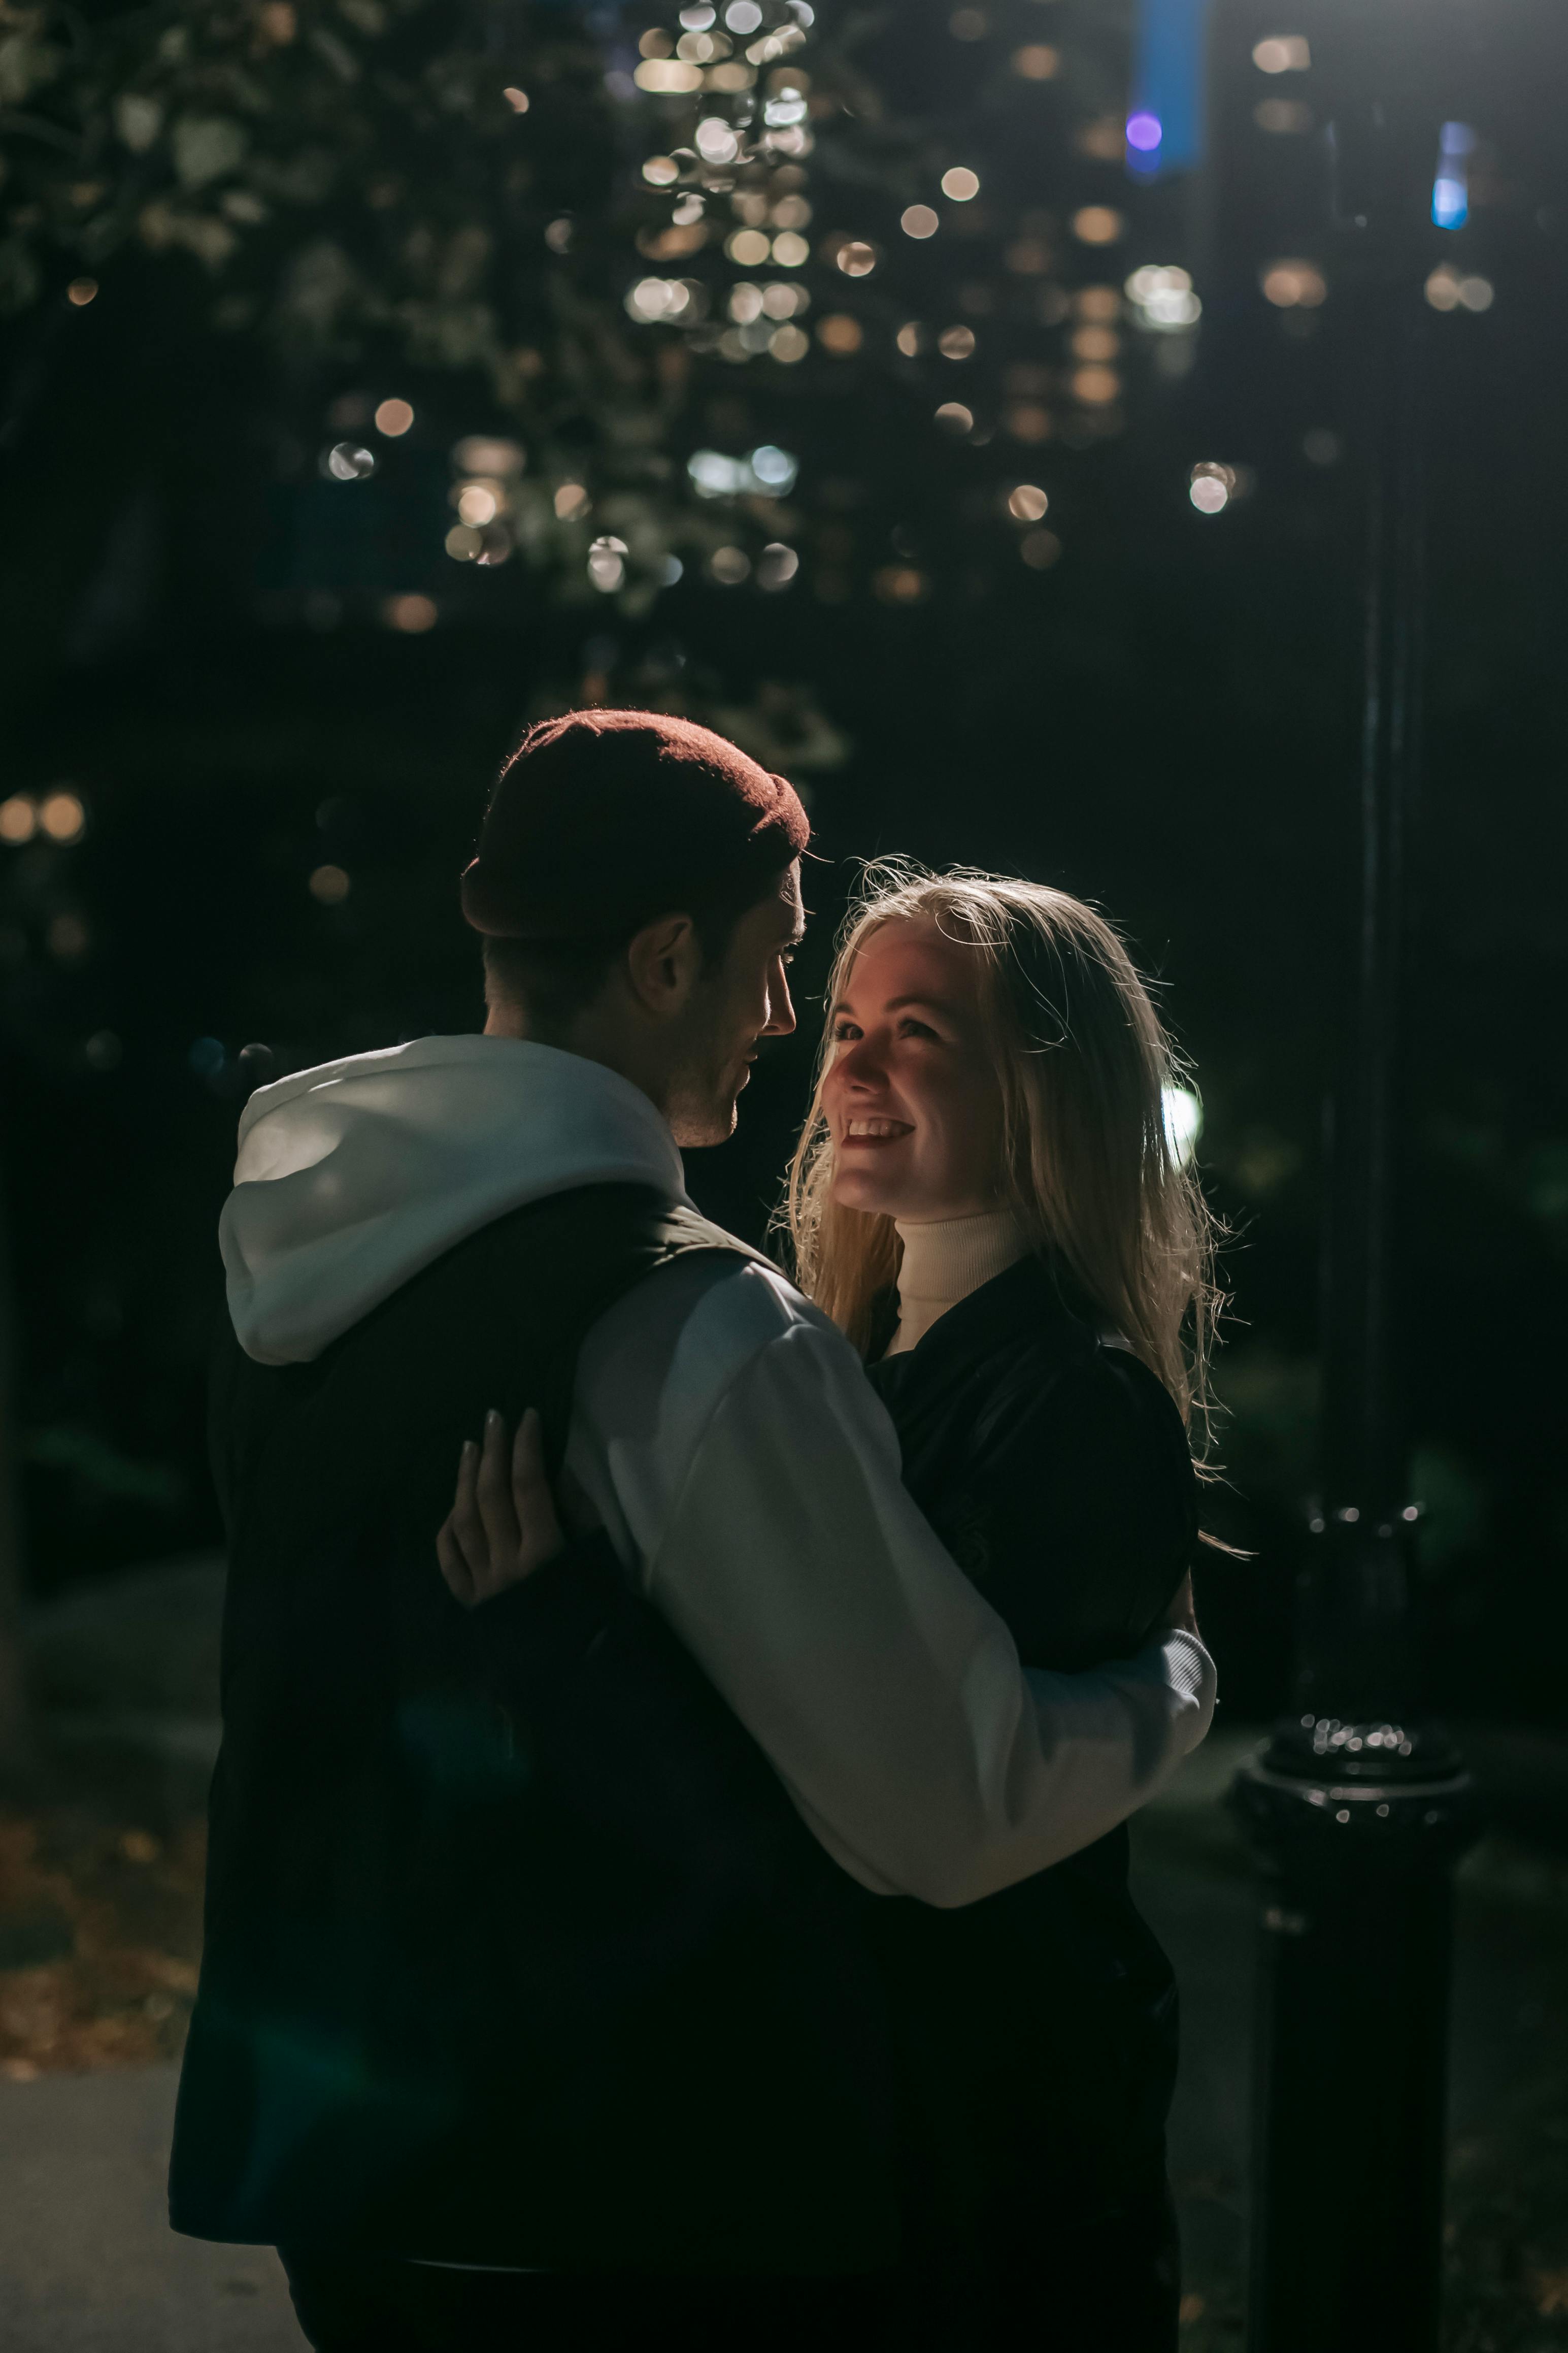 Un homme et une femme s'embrassent | Source : Pexels